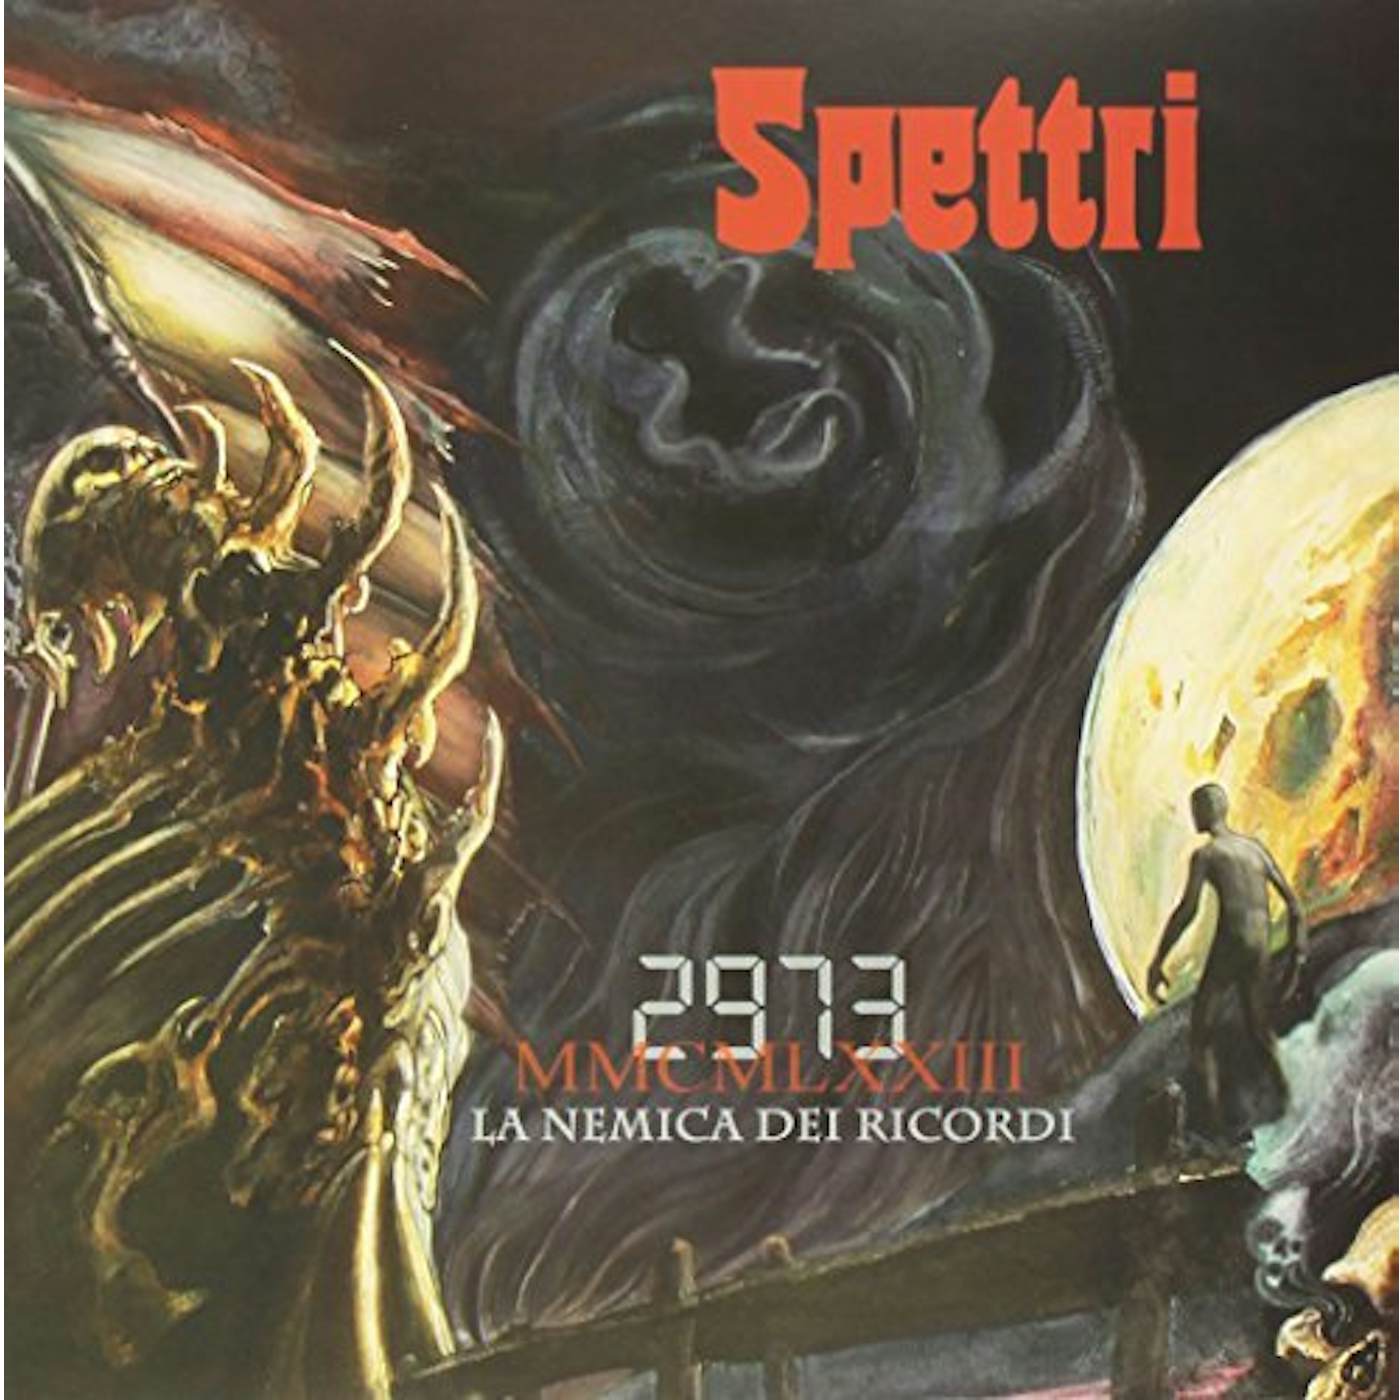 Spettri 2973 La nemica dei ricordi Vinyl Record